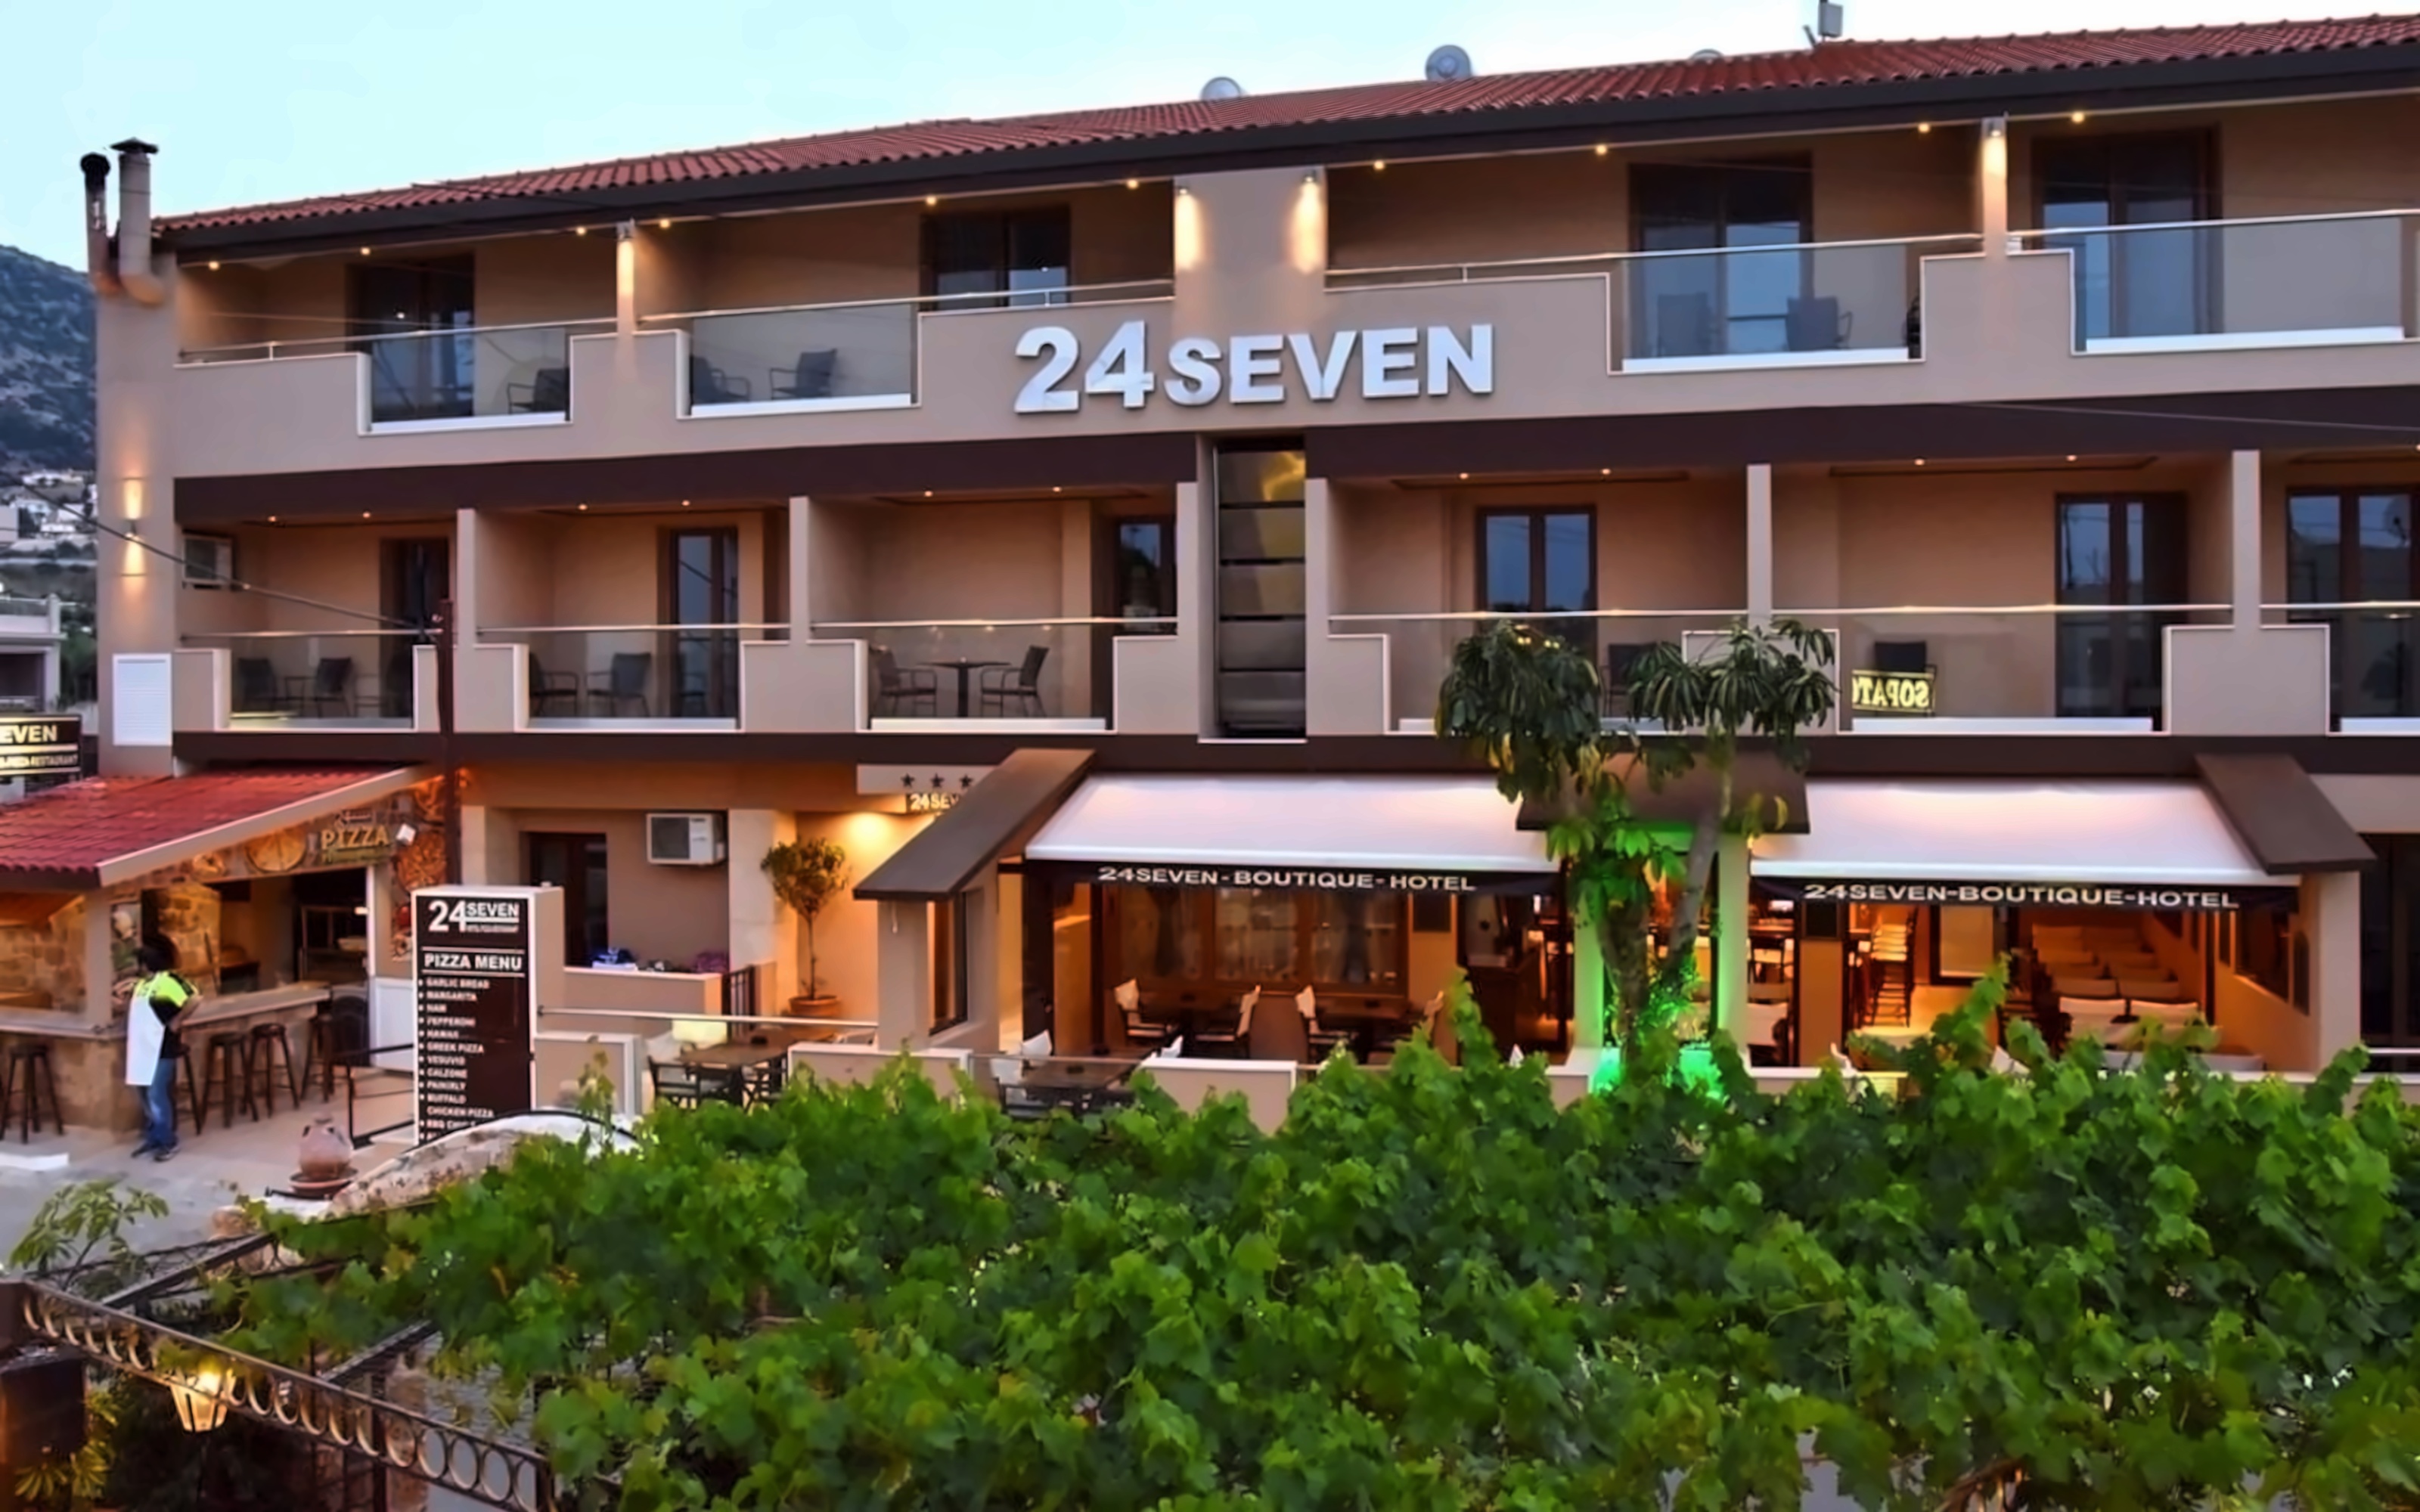 24 SEVEN BOUTIQUE HOTEL